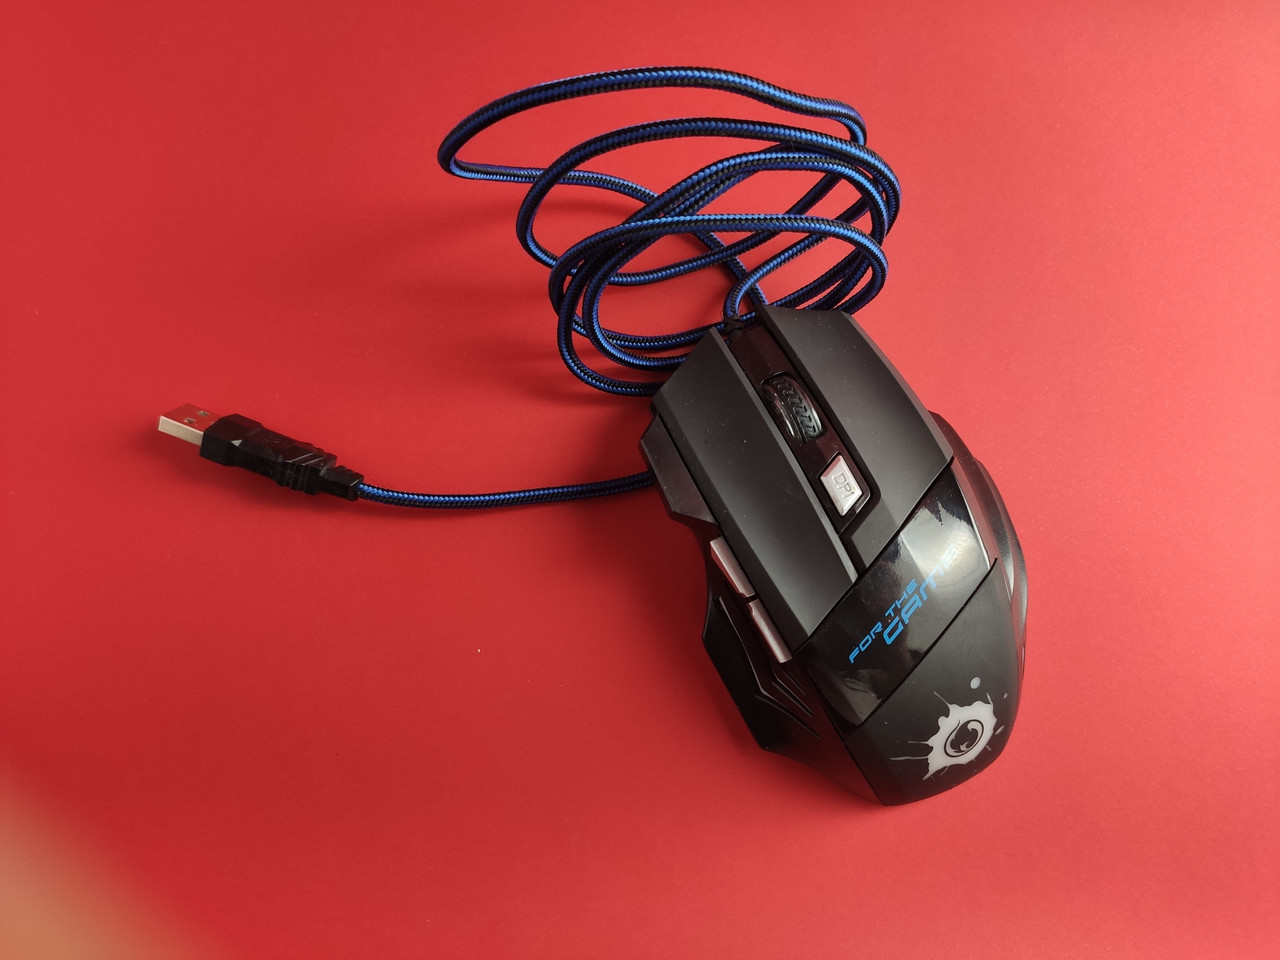 БУ оптическая игровая проводная компьютерная мышь с подсветкой 5500 DPНет в наличии